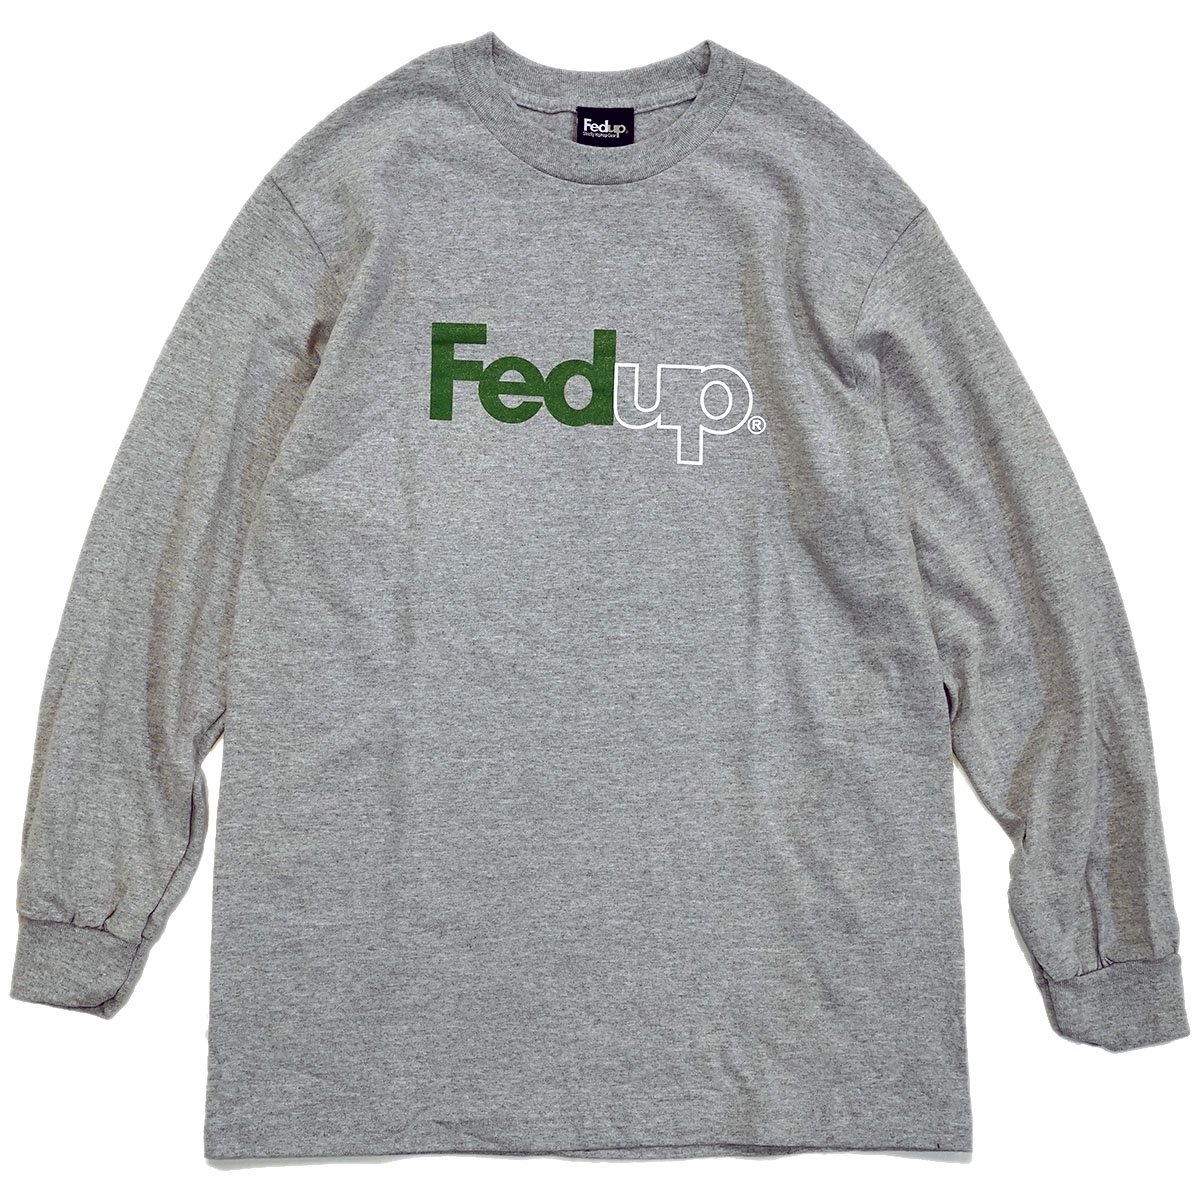 Fedup (フェドアップ) ロンT, ロングスリーブTシャツの取り扱い店舗